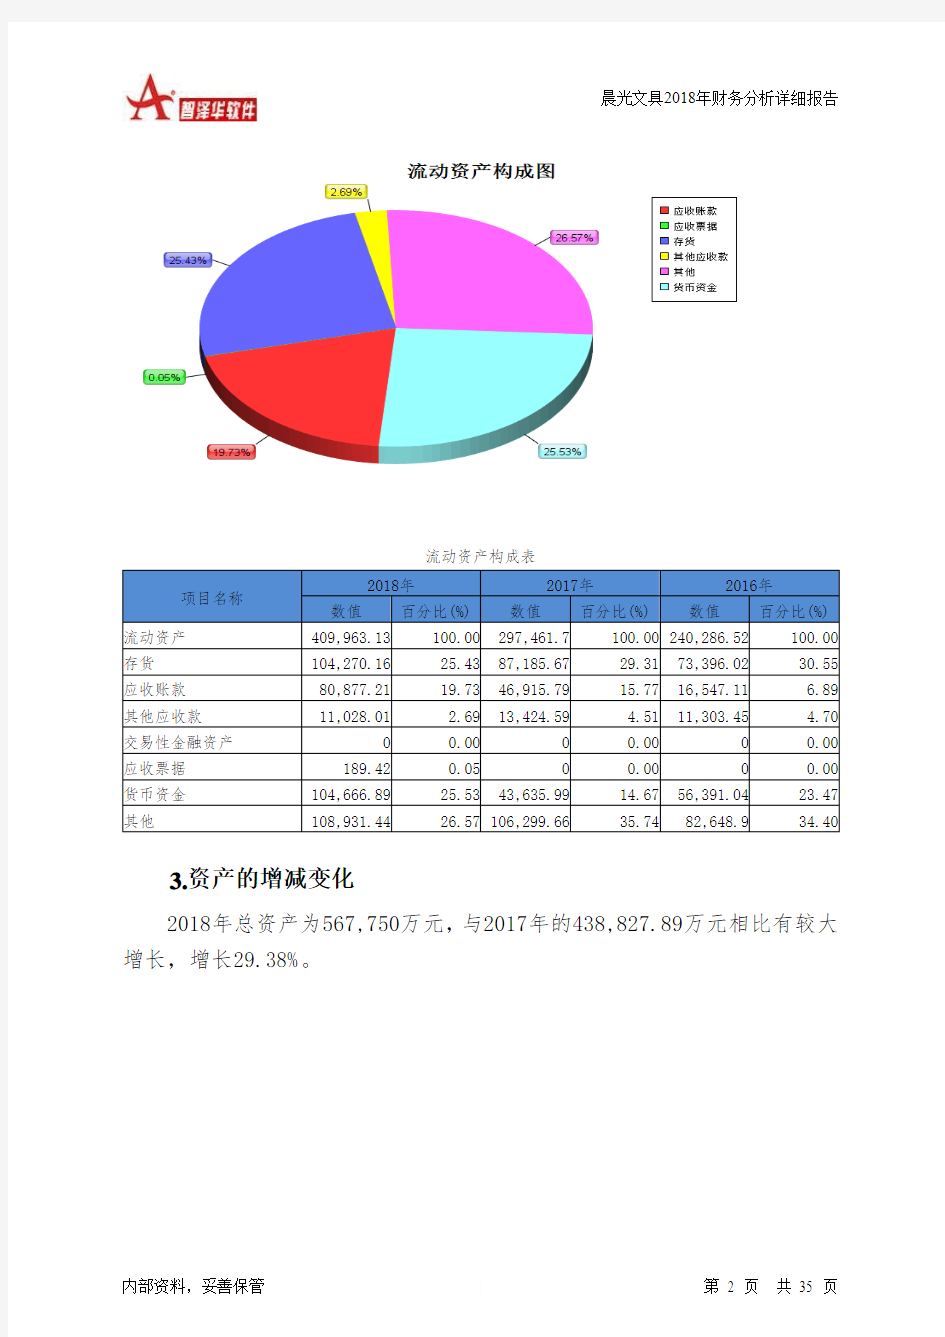 晨光文具2018年财务分析详细报告-智泽华